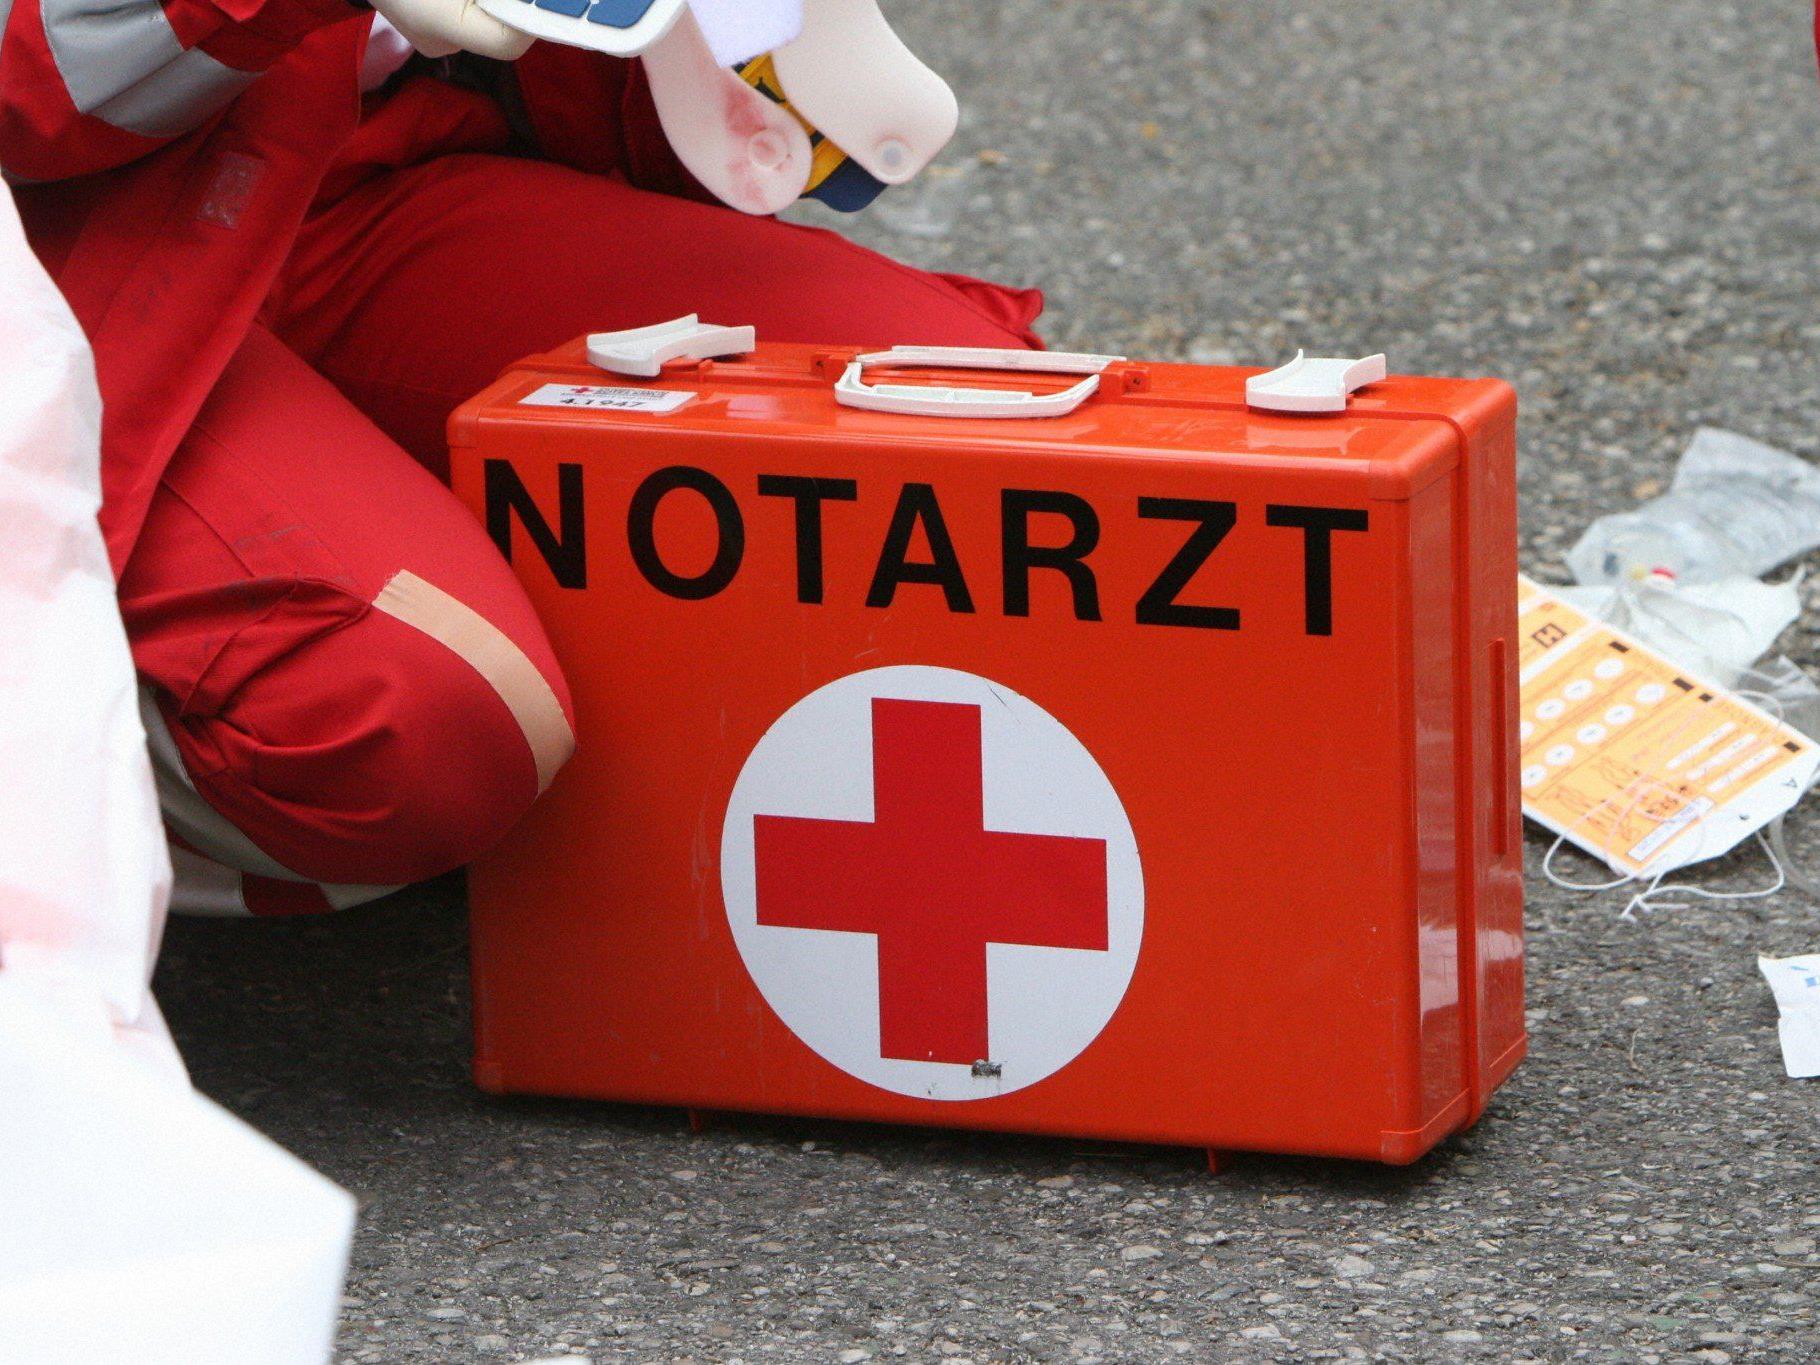 Der Arbeiter wurde mit schweren Verletzungen an beiden Händen ins LKH Bregenz gebracht.